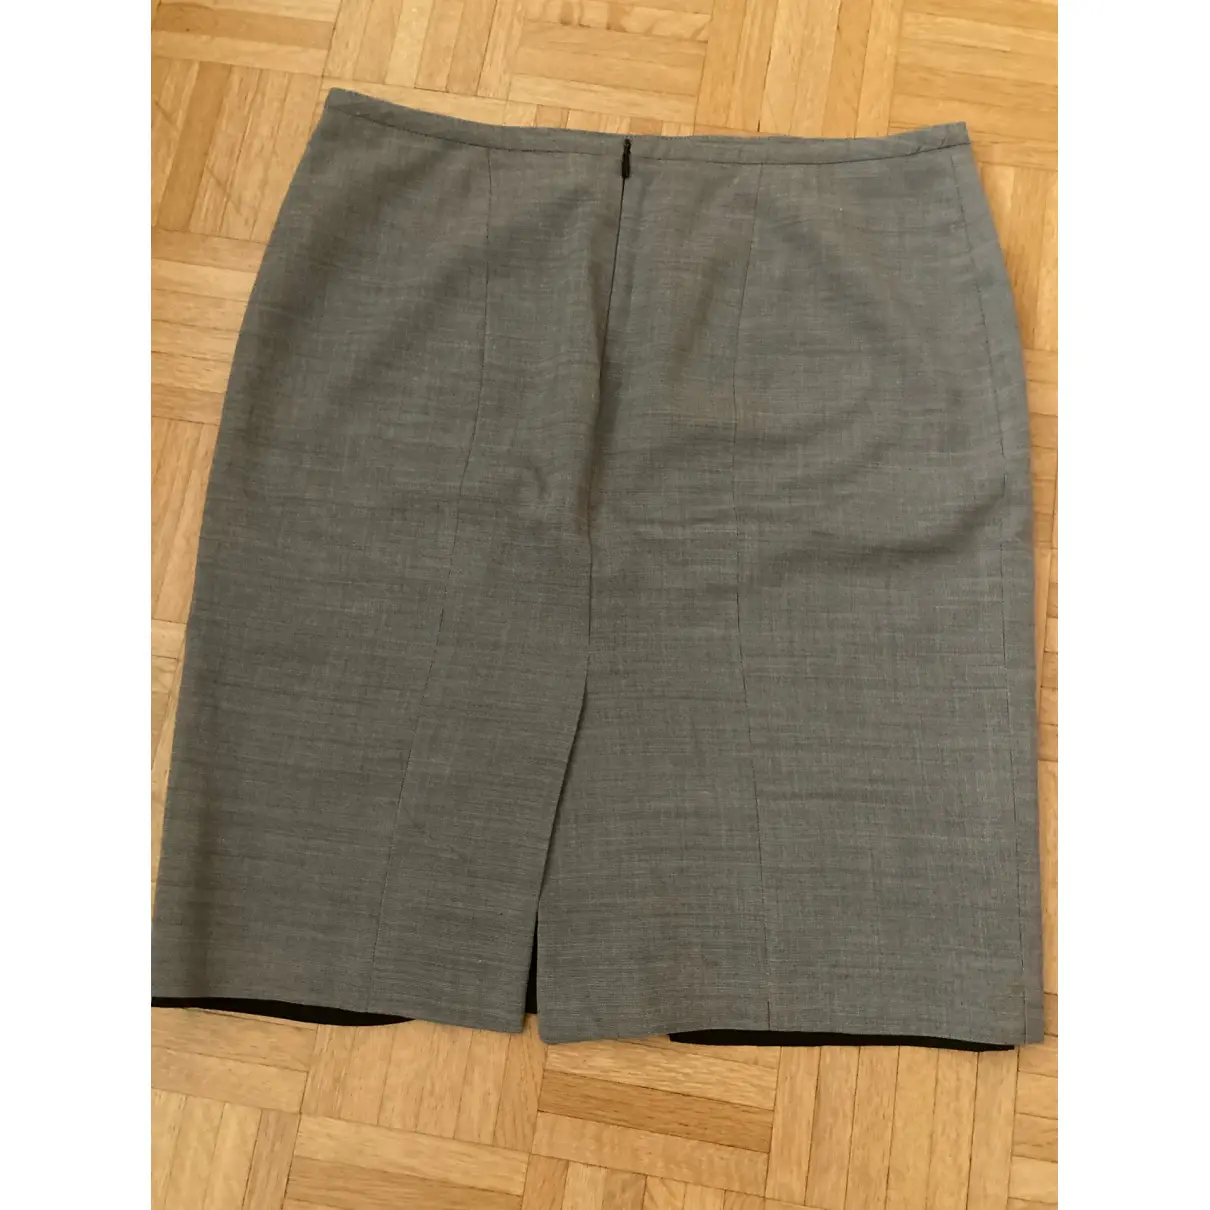 Buy Hugo Boss Skirt suit online